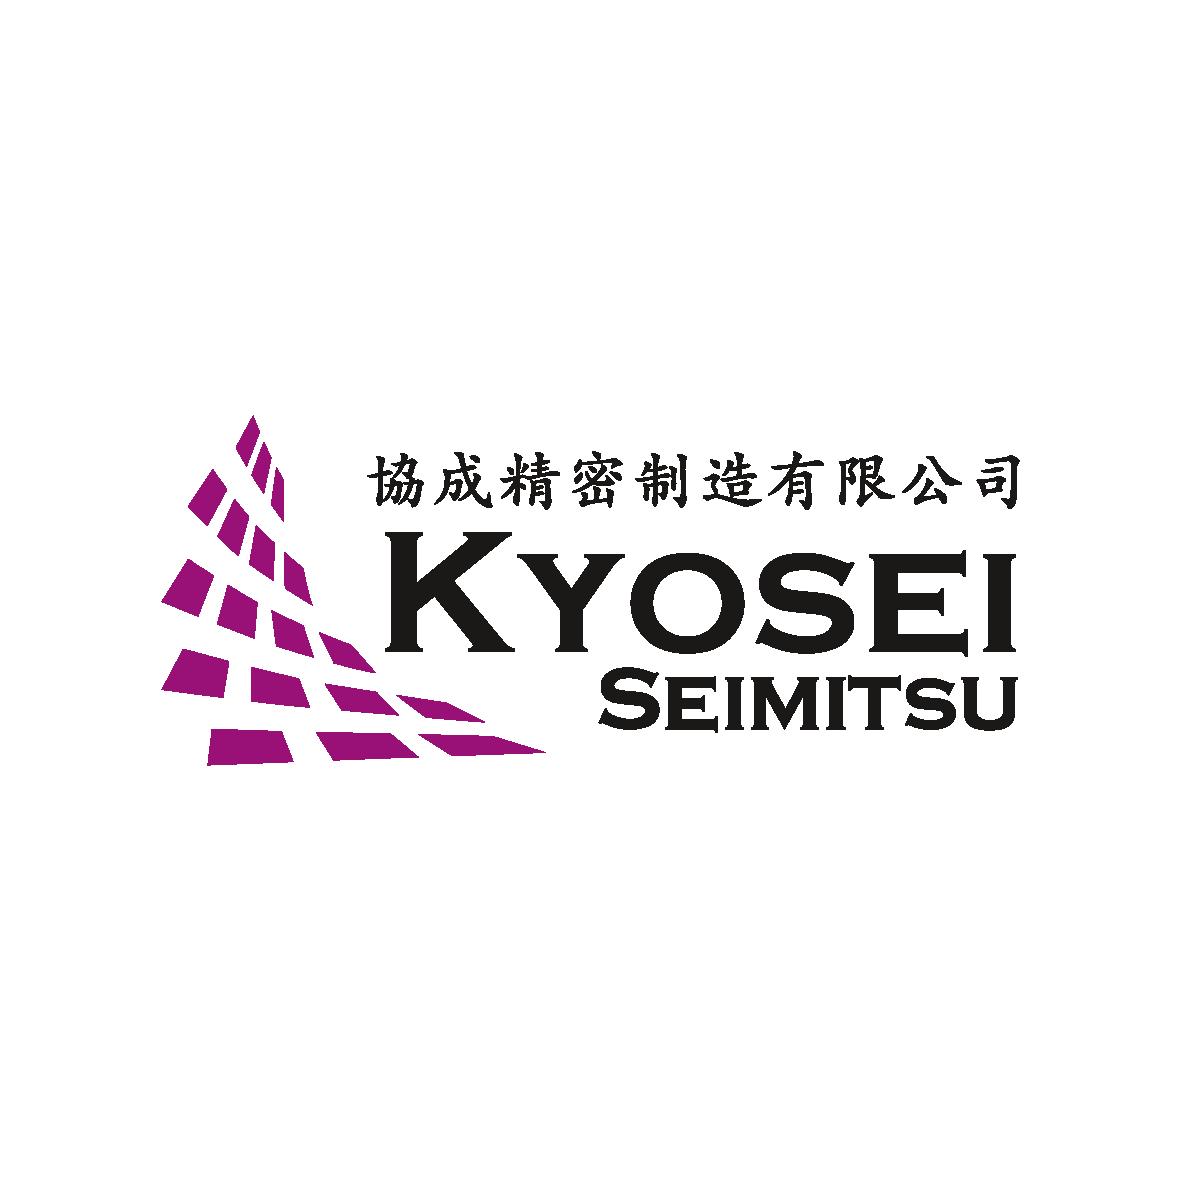 KYOSEI SEIMITSU MANUFACTURING SDN BHD